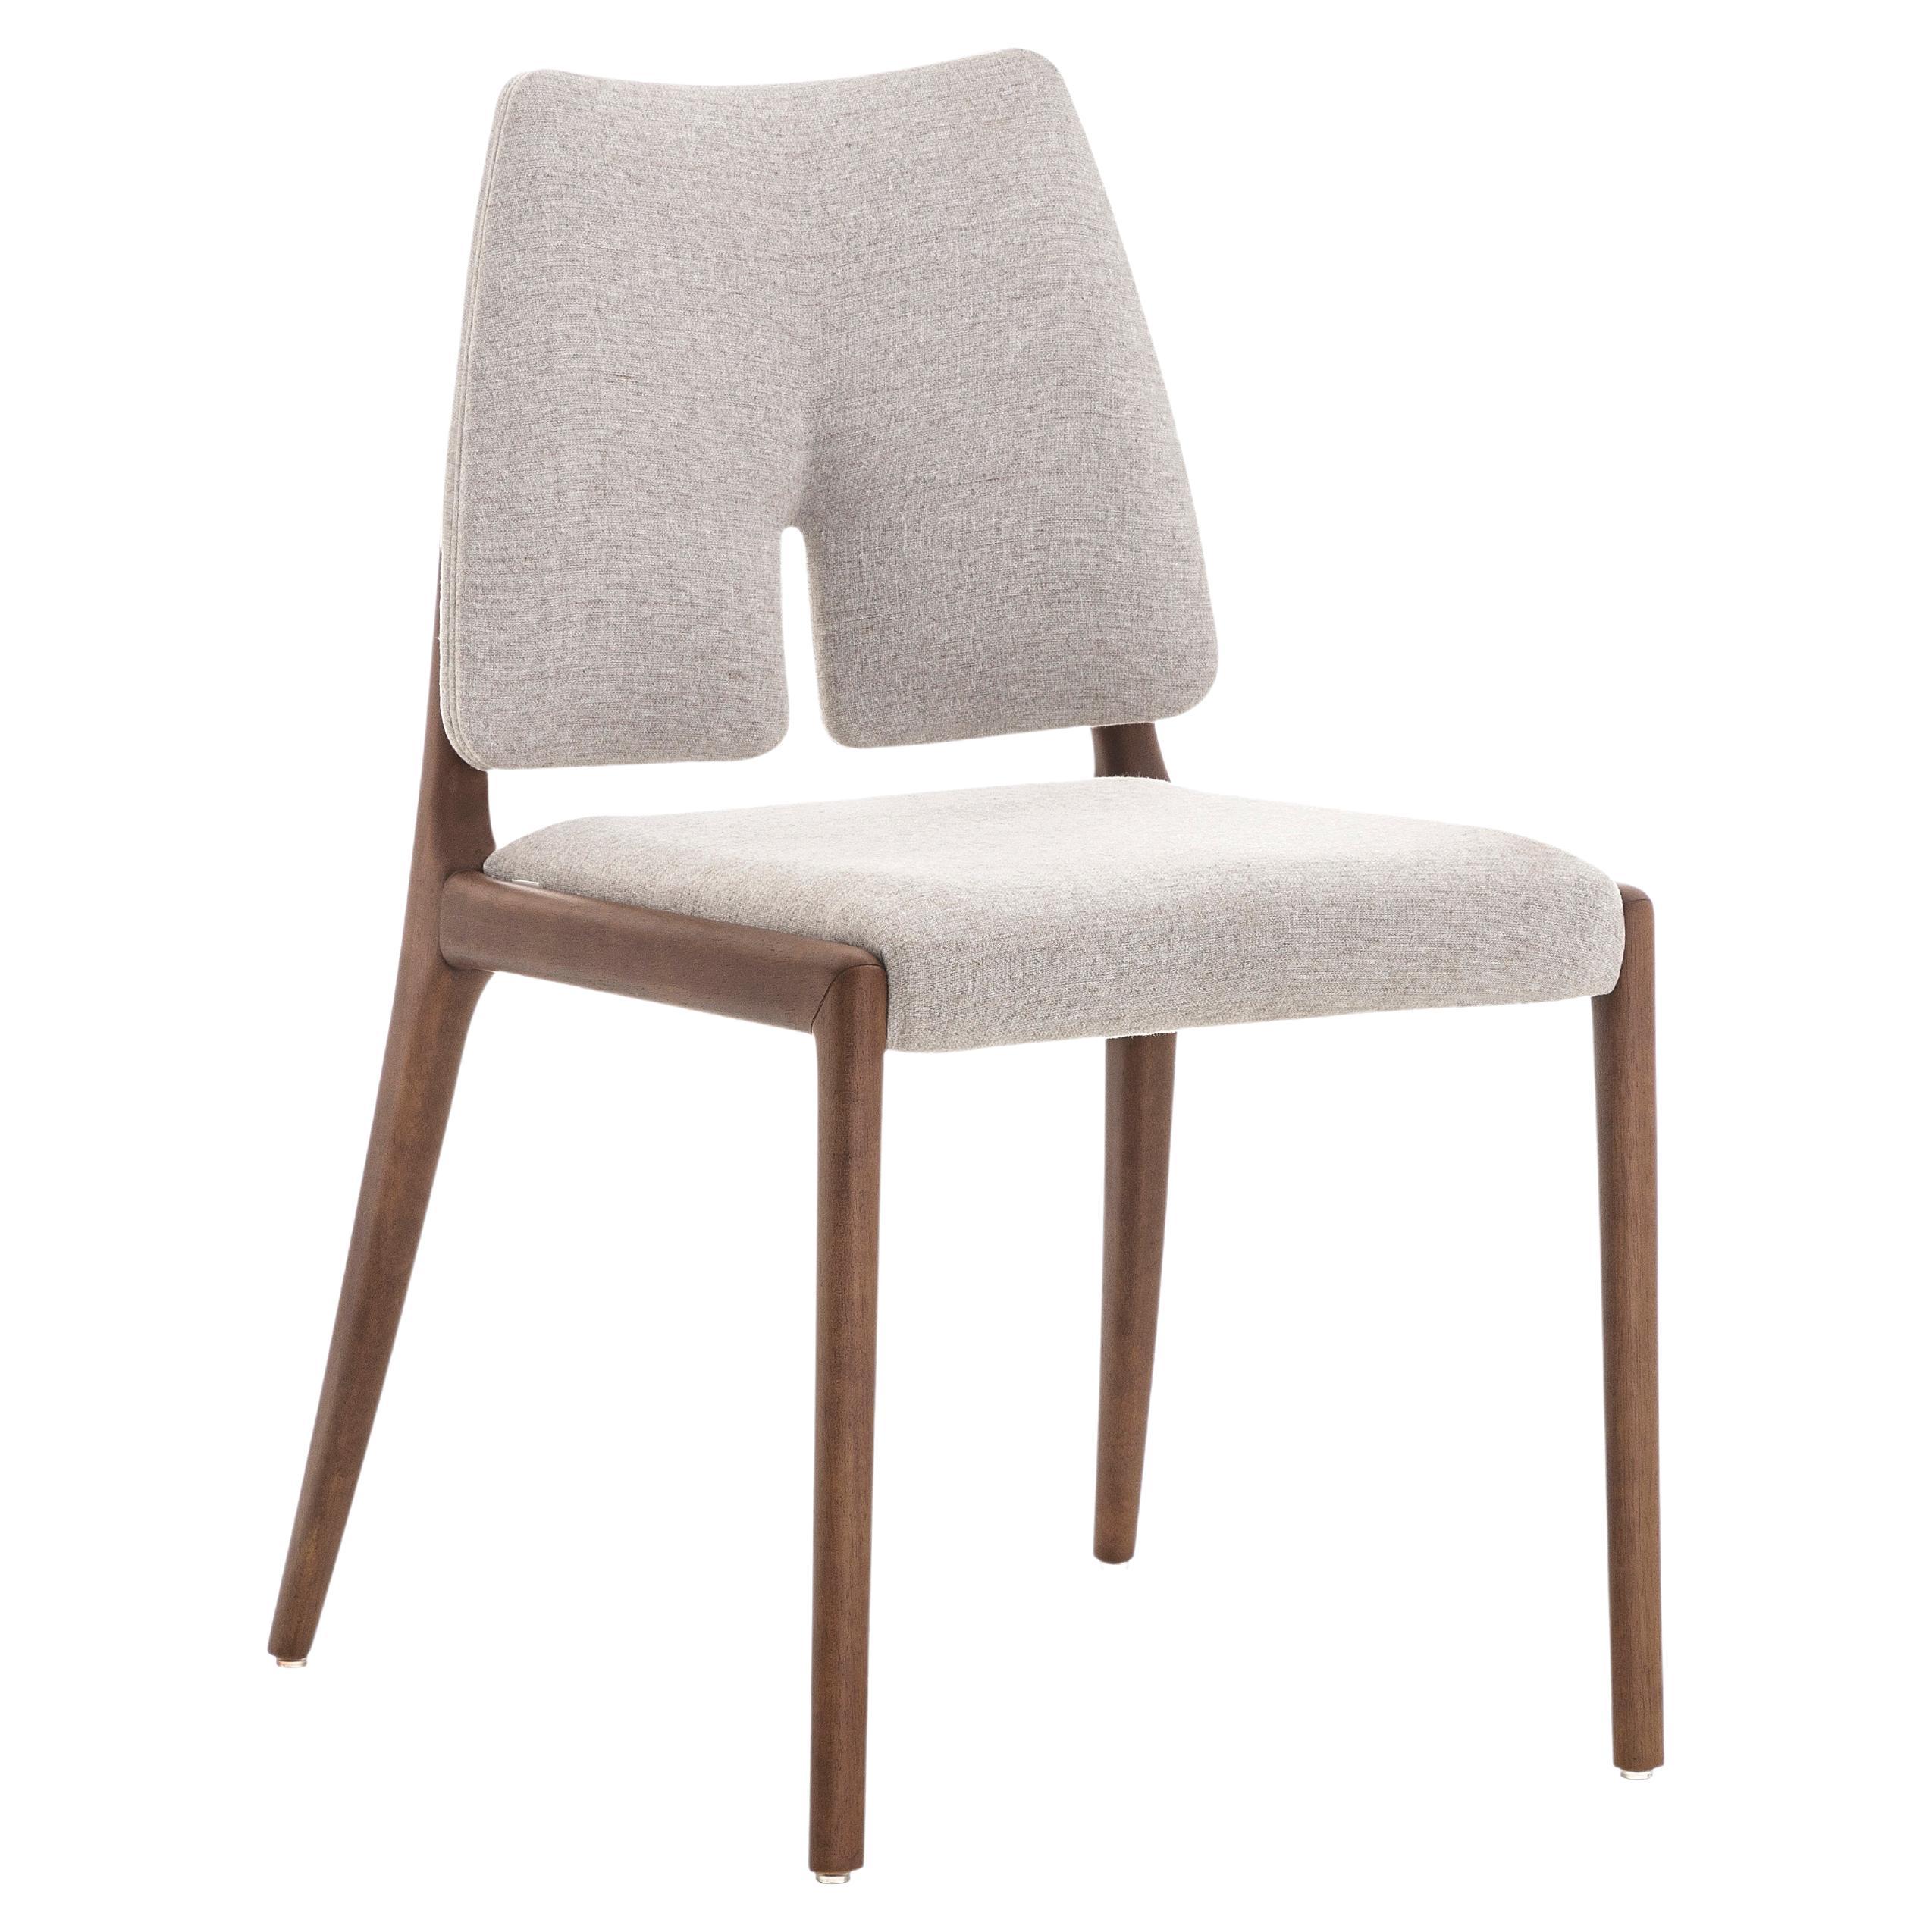 L'équipe créative de Uultis a créé cette chaise de salle à manger pour embellir cet espace familial avec des pieds qui sont en bois dans une finition noyer, en le combinant avec un coton beige clair beau tissu. Il s'agit d'une chaise conçue pour